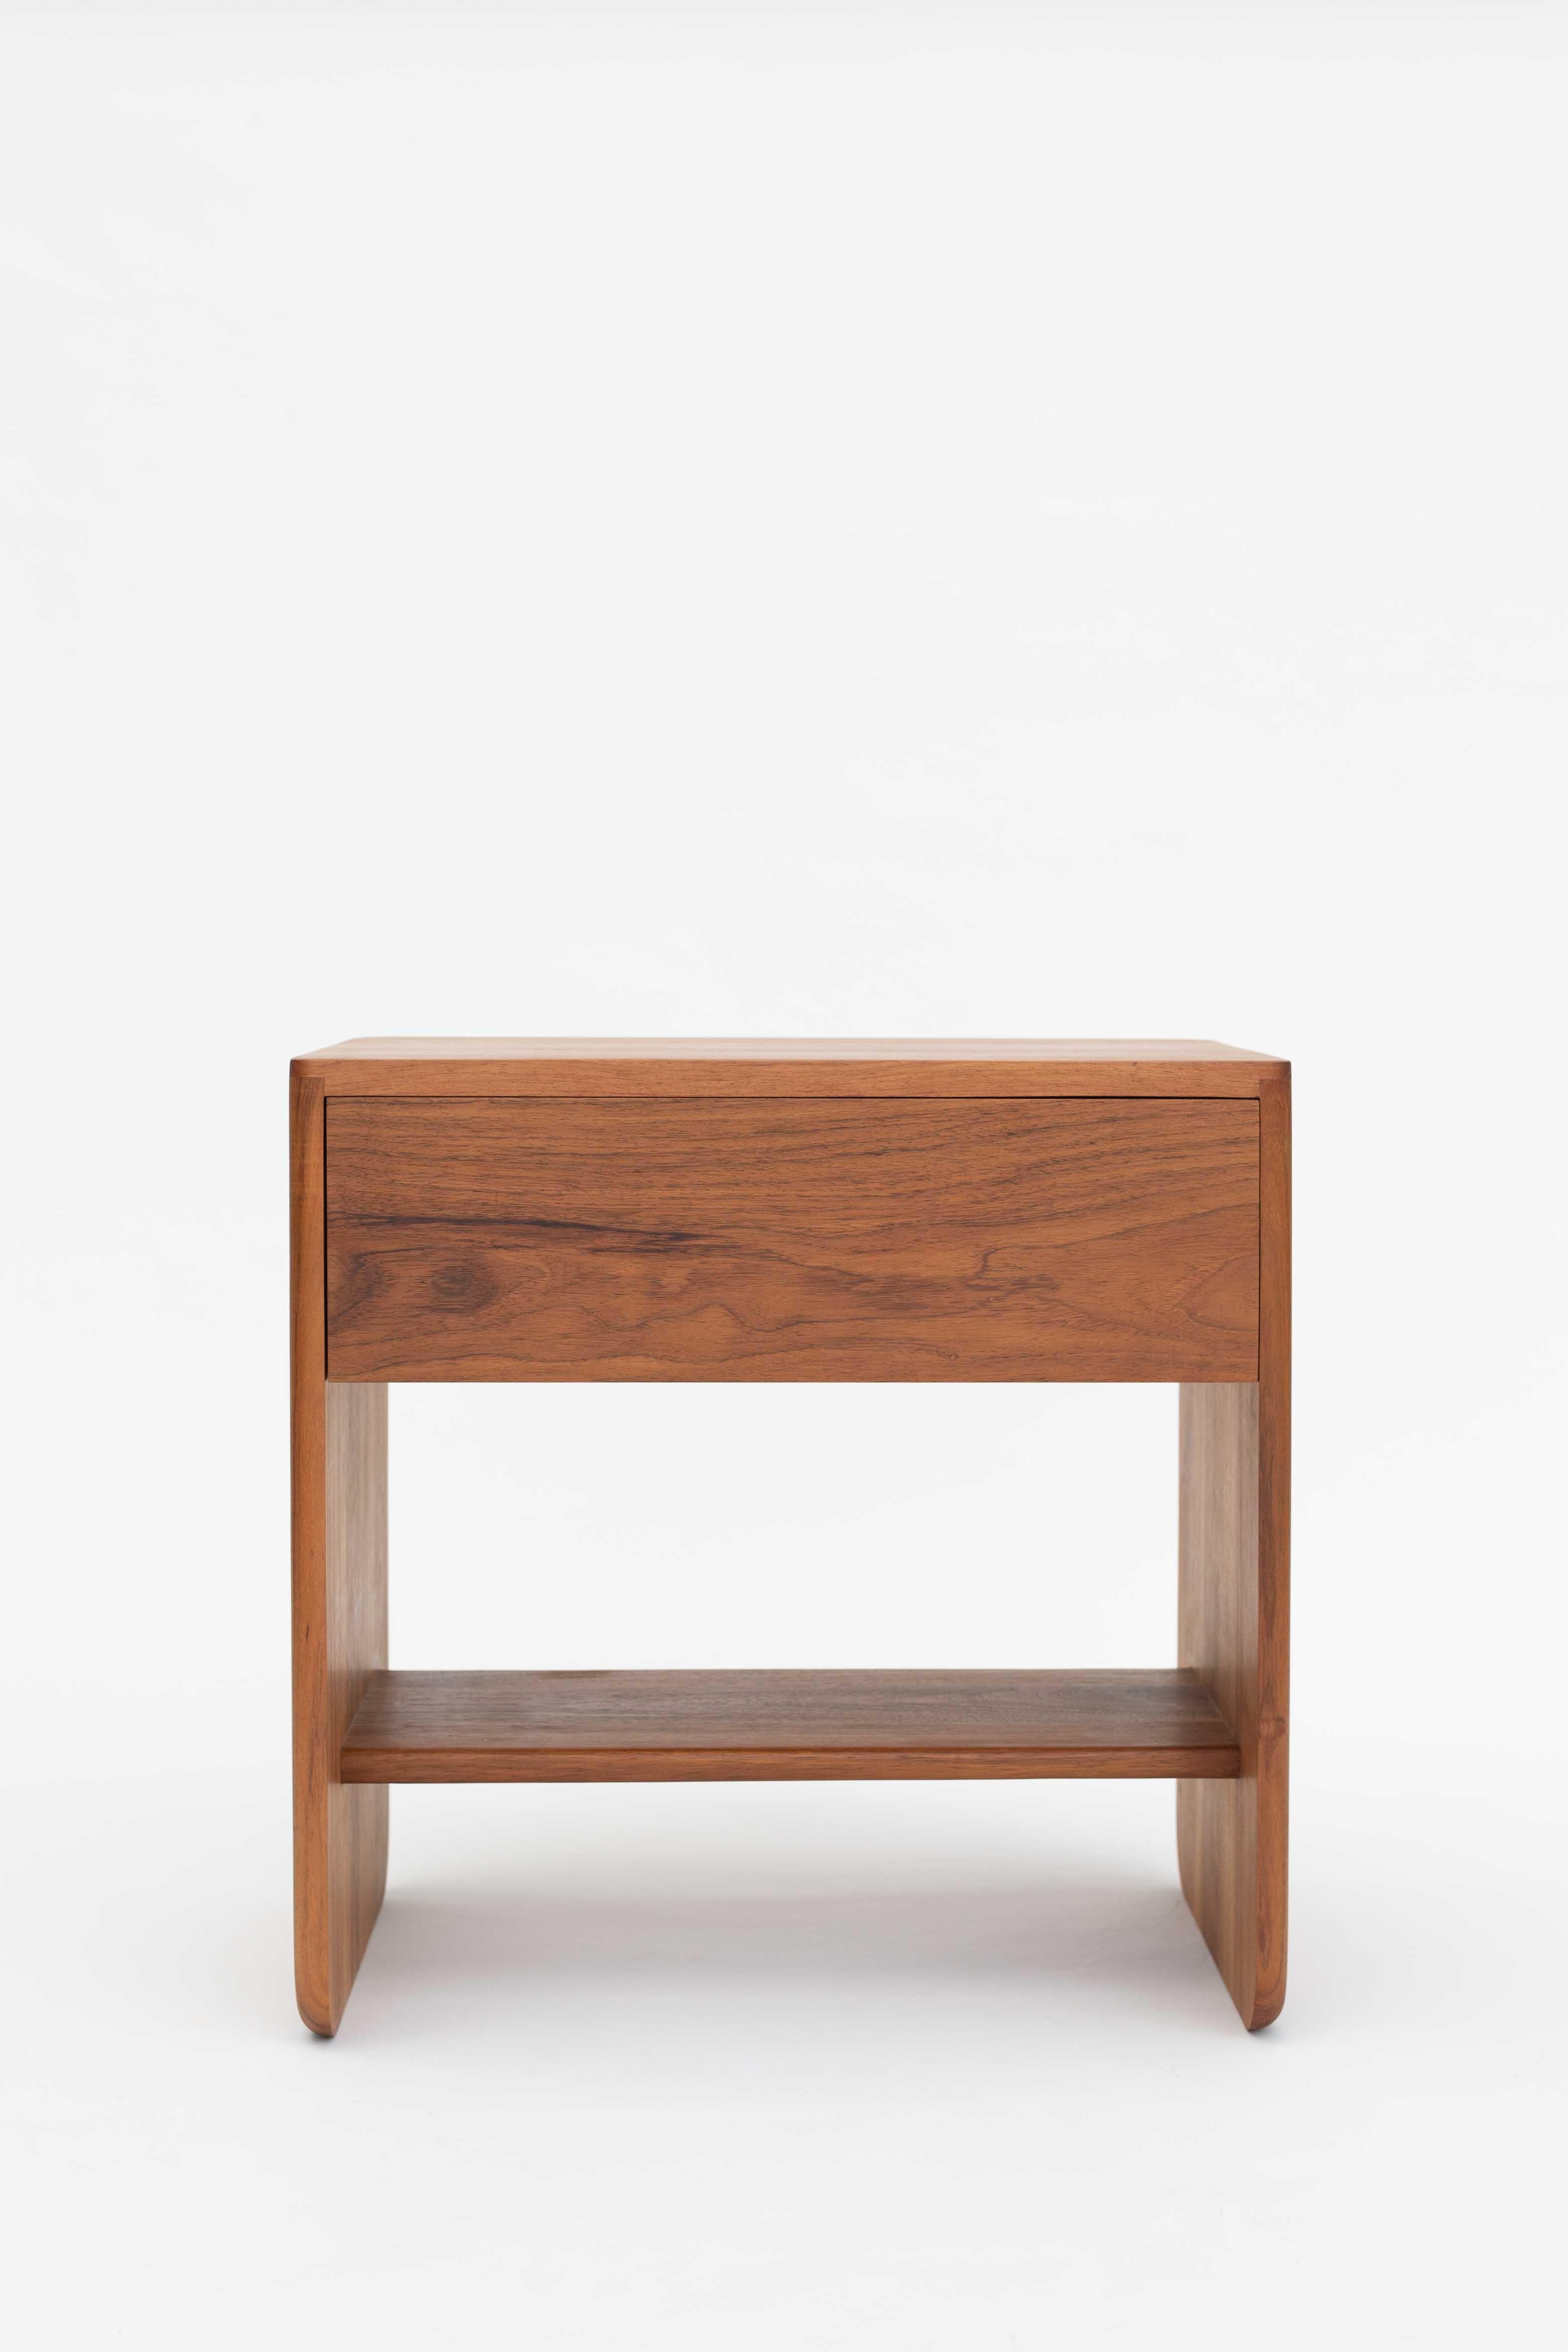 Das schlichte und praktische Design des Nachttischs Ox betont die Schönheit der Maserung und Struktur des Holzes. Die Seitenkanten der Tischplatte sind leicht abgerundet und heben sich dadurch ab, so dass ein Stück mit wunderschön detaillierten